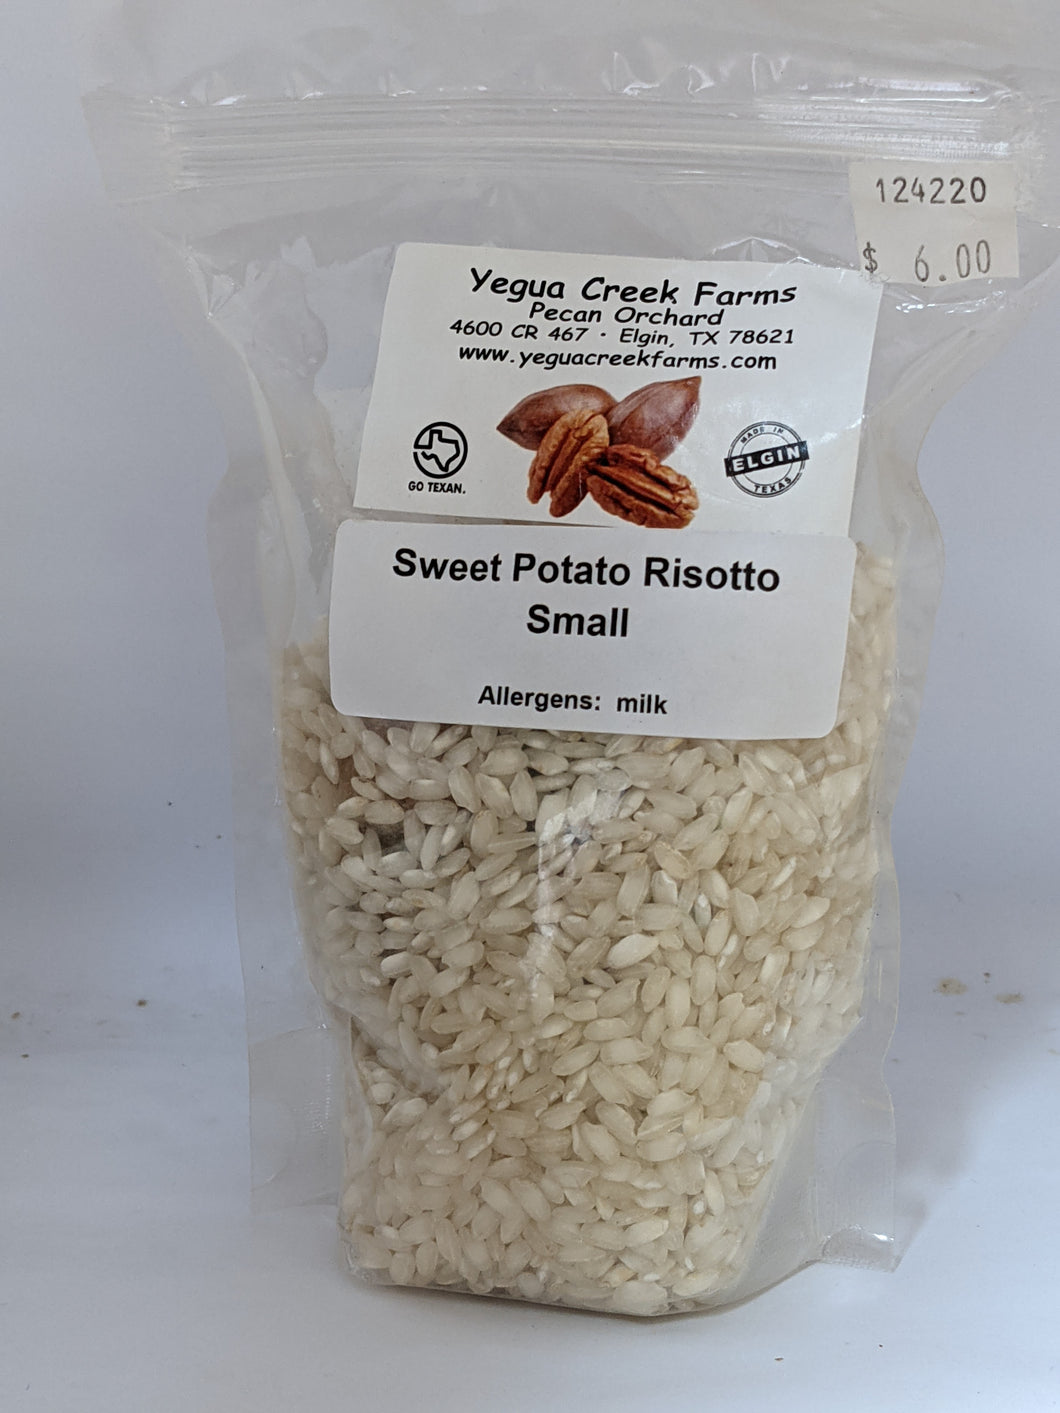 Sweet Potato Risotto Mix - Small